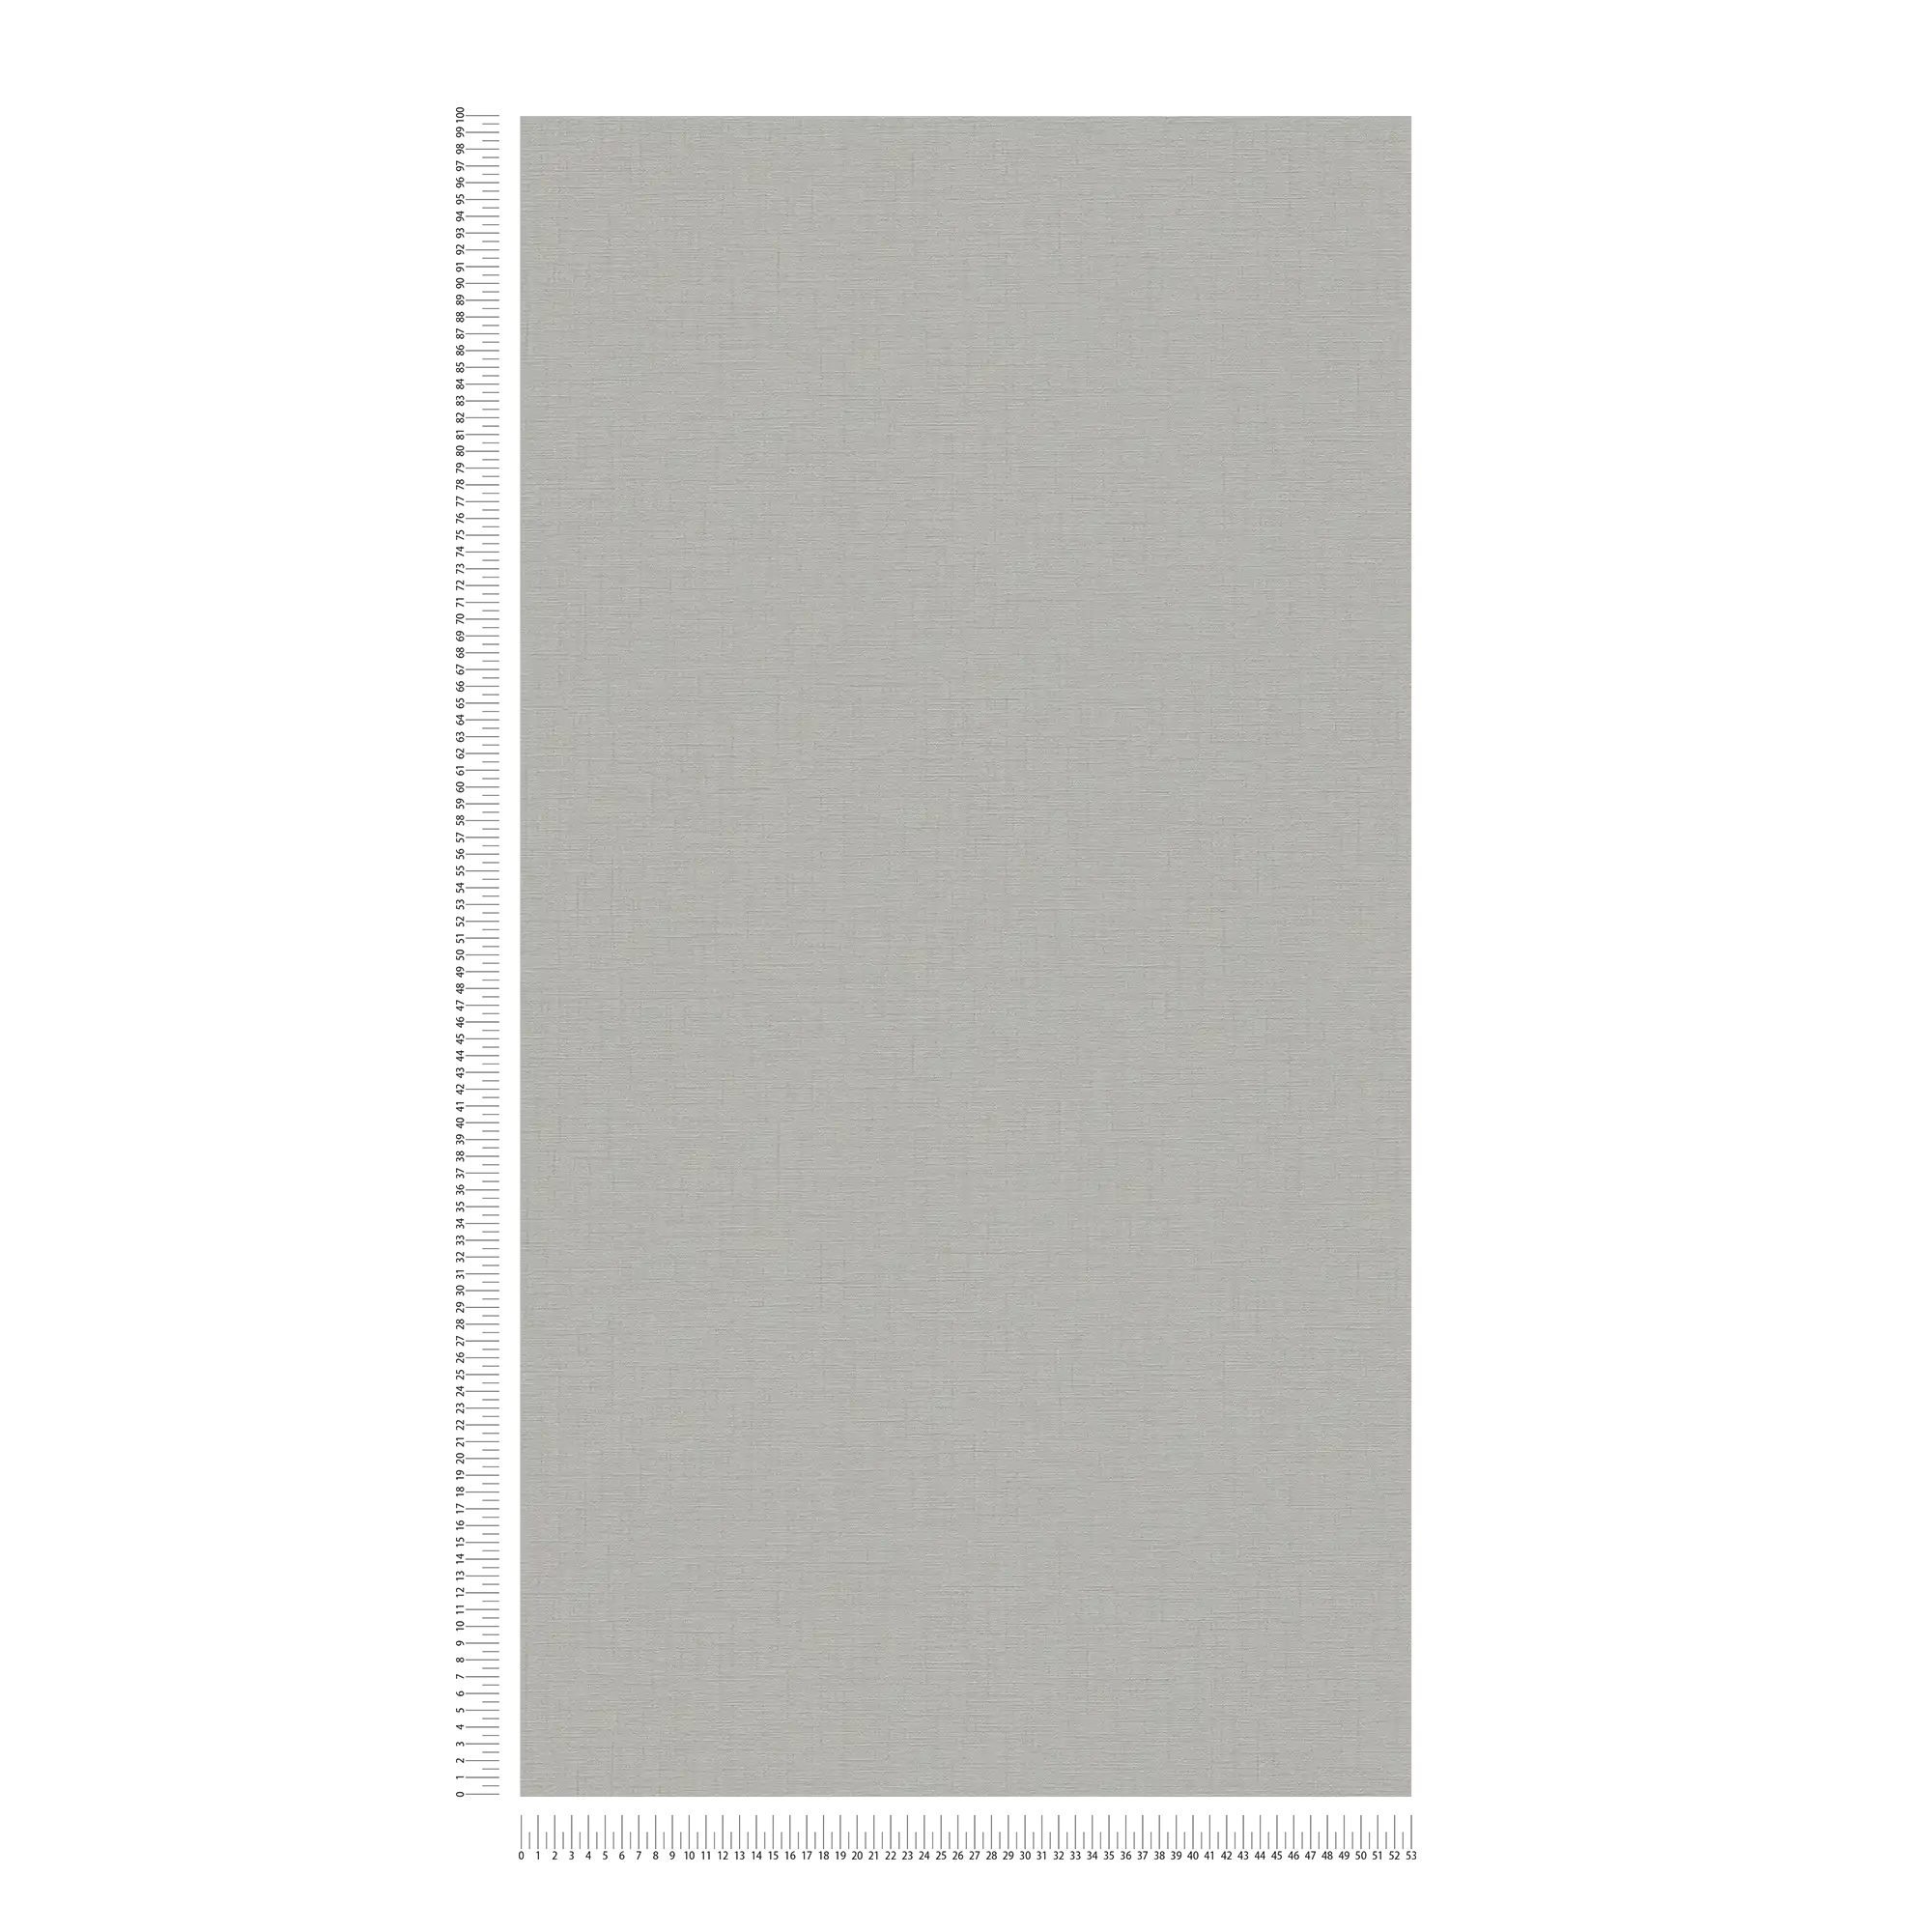             Carta da parati effetto lino in tessuto non tessuto di colore grigio chiaro - grigio
        